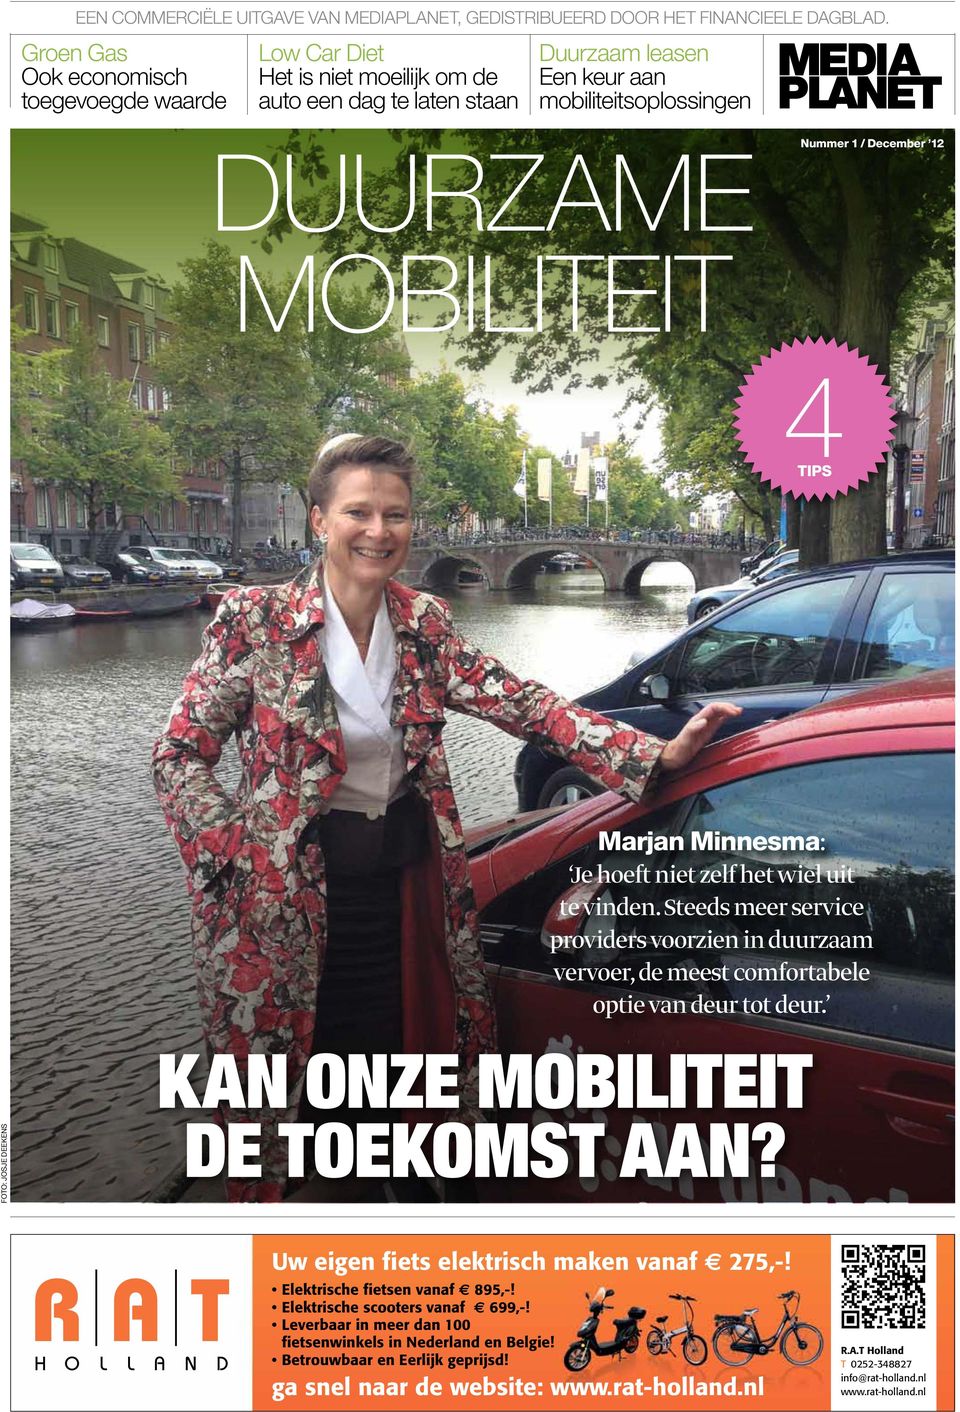 MOBILITEIT 4TIPS Marjan Minnesma: Je hoeft niet zelf het wiel uit te vinden. Steeds meer service providers voorzien in duurzaam vervoer, de meest comfortabele optie van deur tot deur.